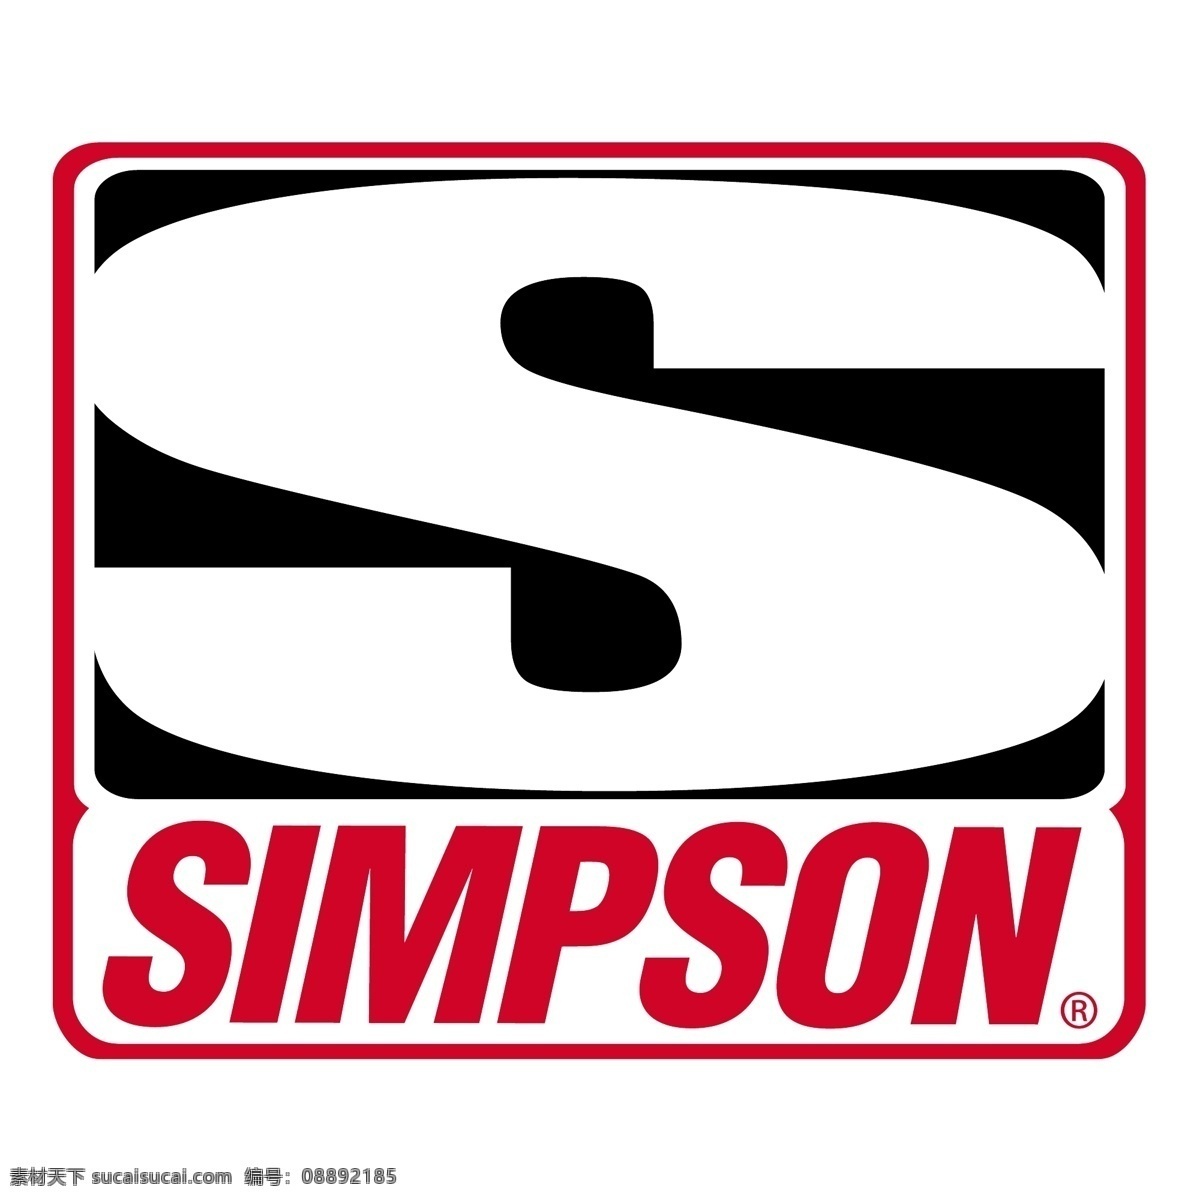 辛普森 赛车 自由 标识 psd源文件 logo设计